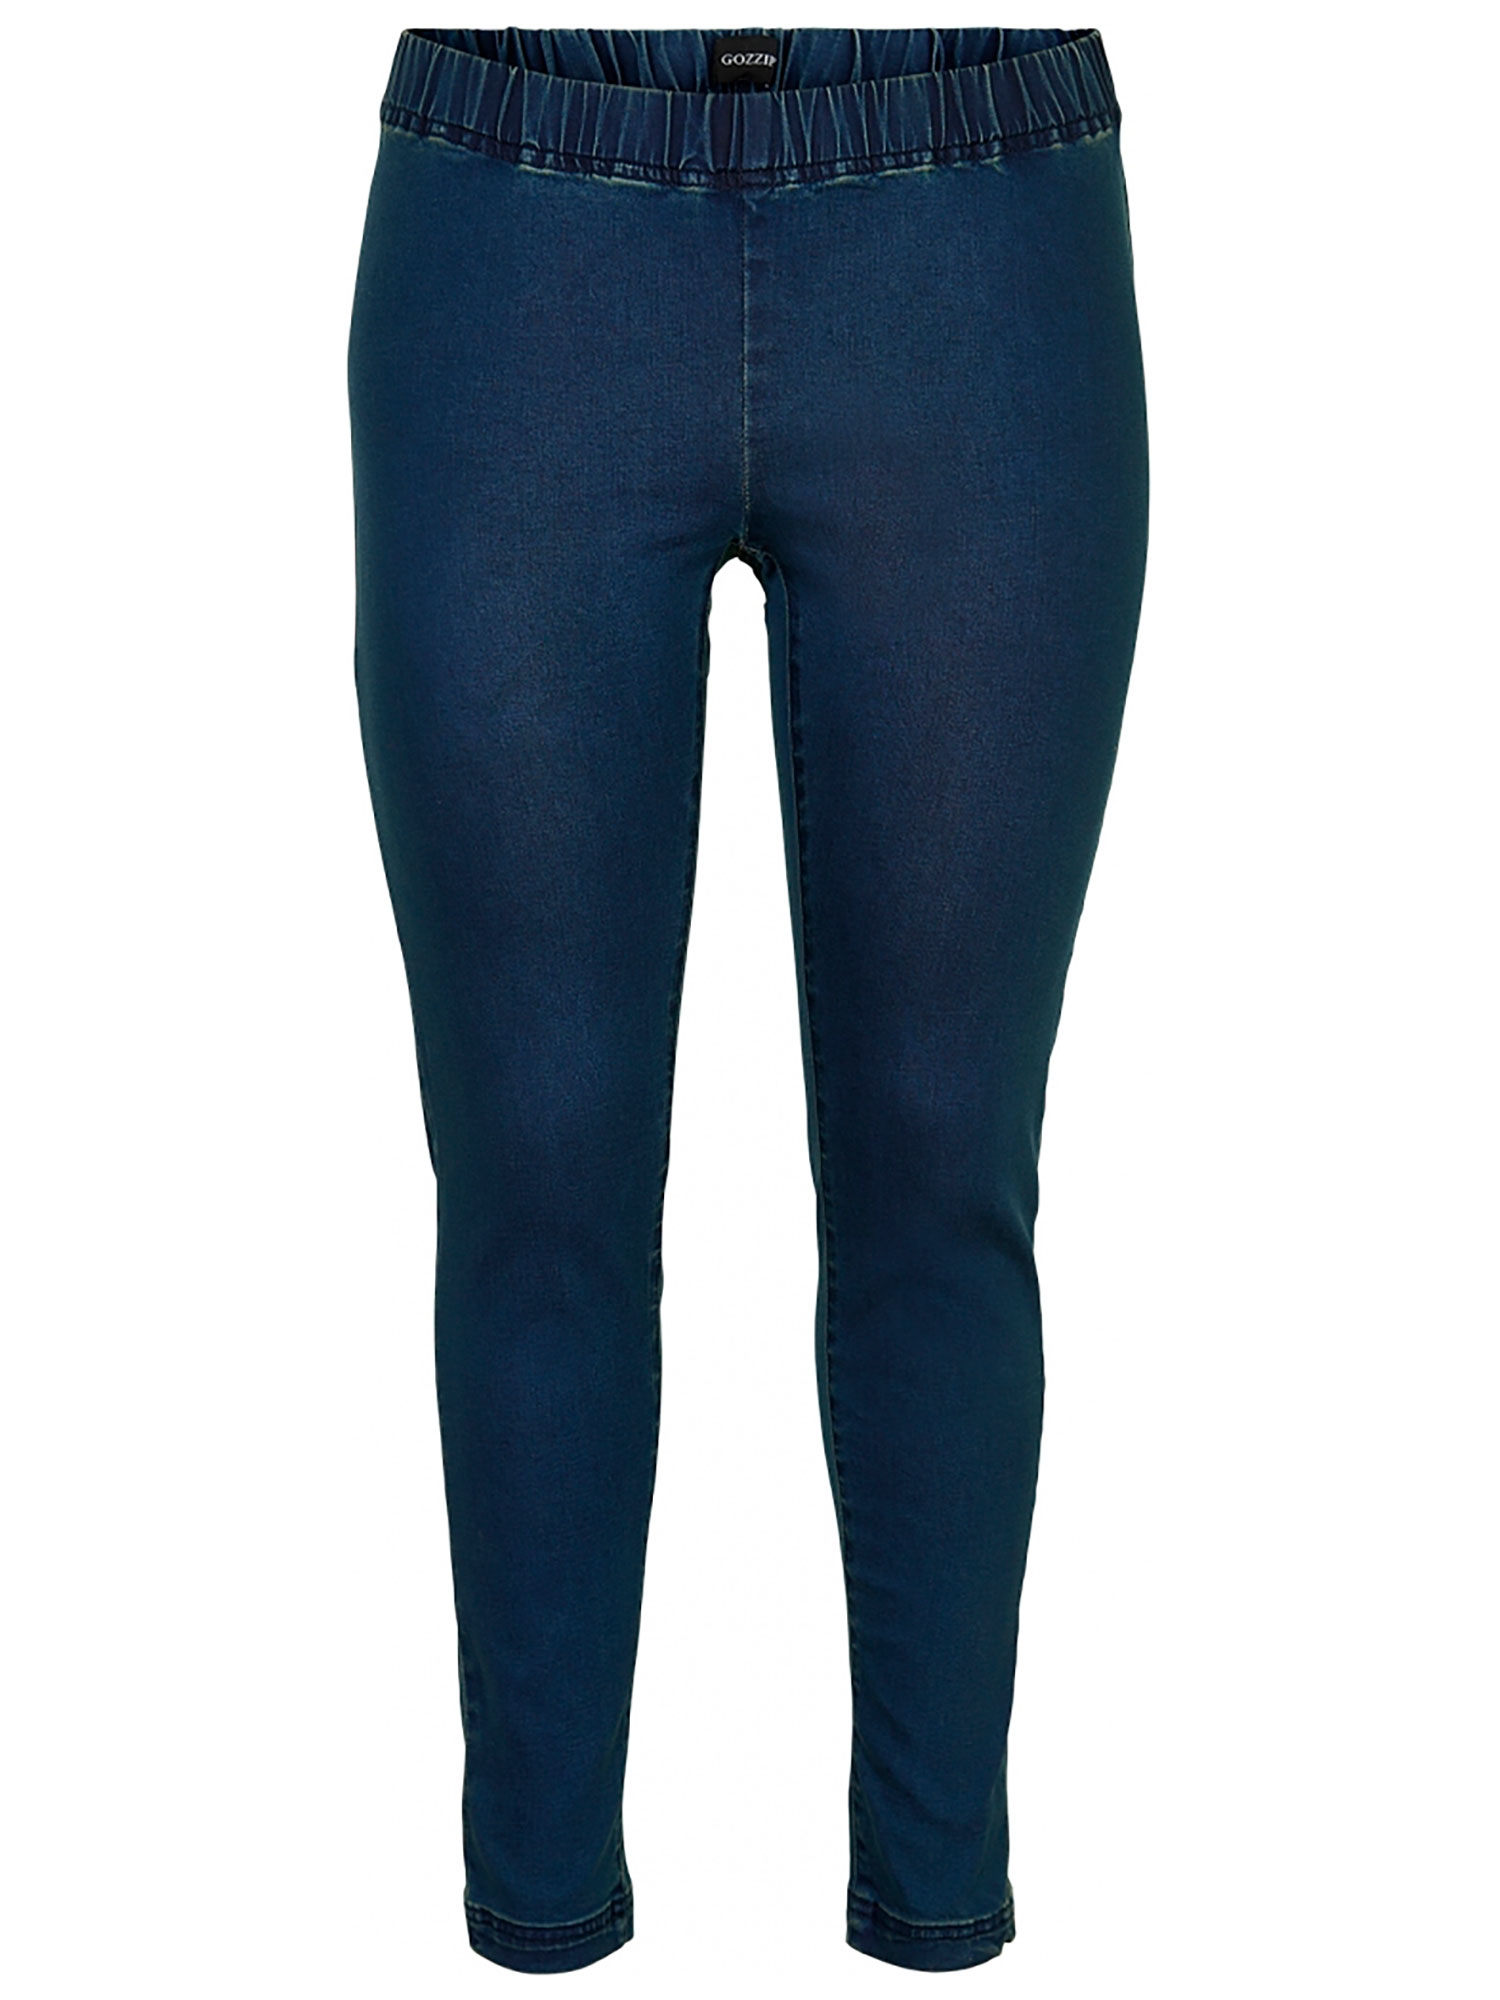 MAYA - Mørkeblå denim leggings fra Gozzip